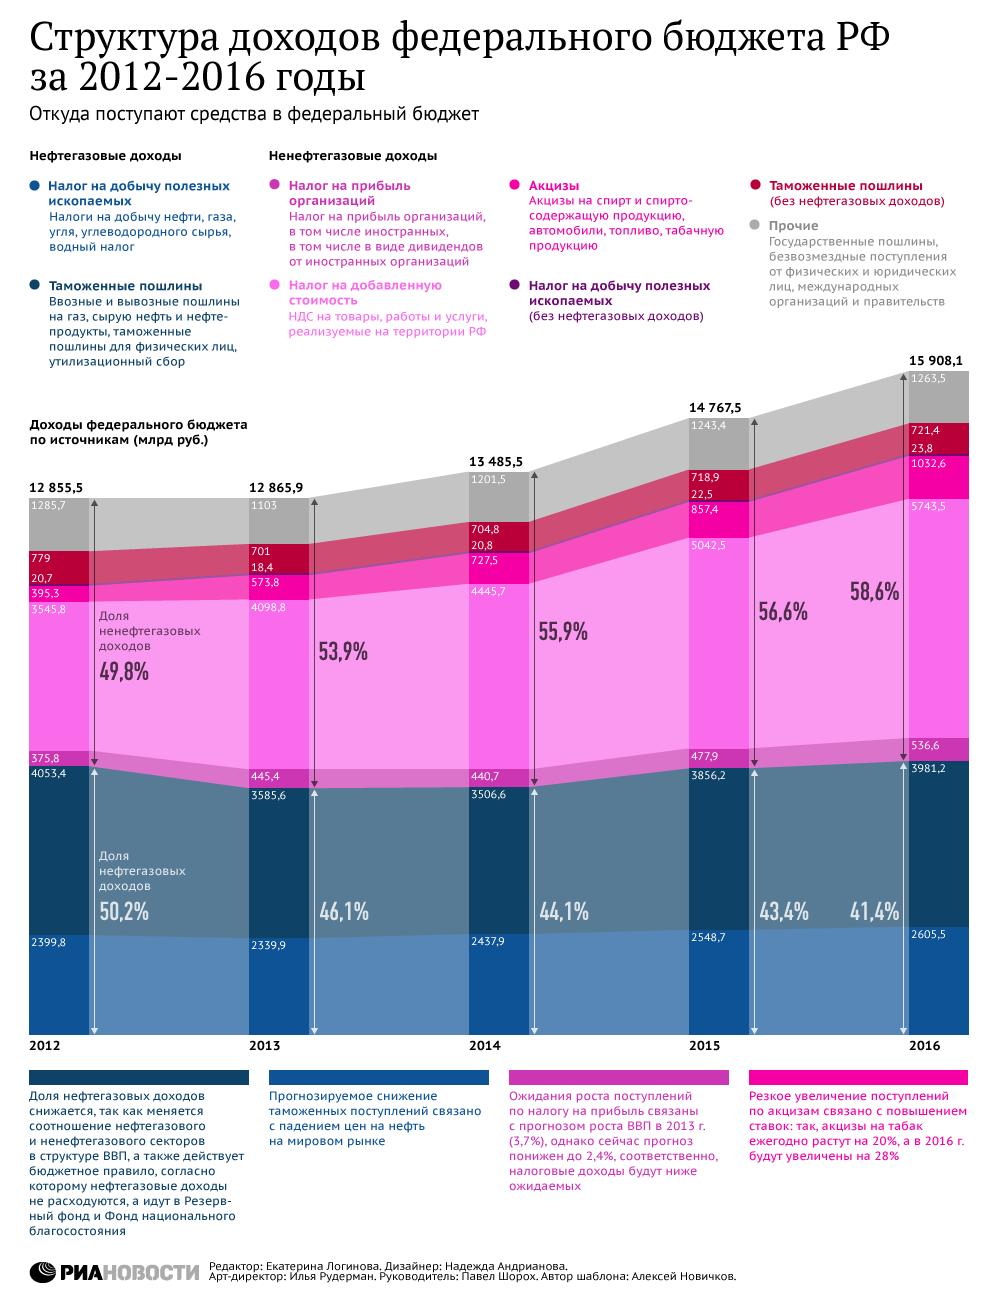 Структура доходов федерального бюджета РФ за 2012-2016 годы